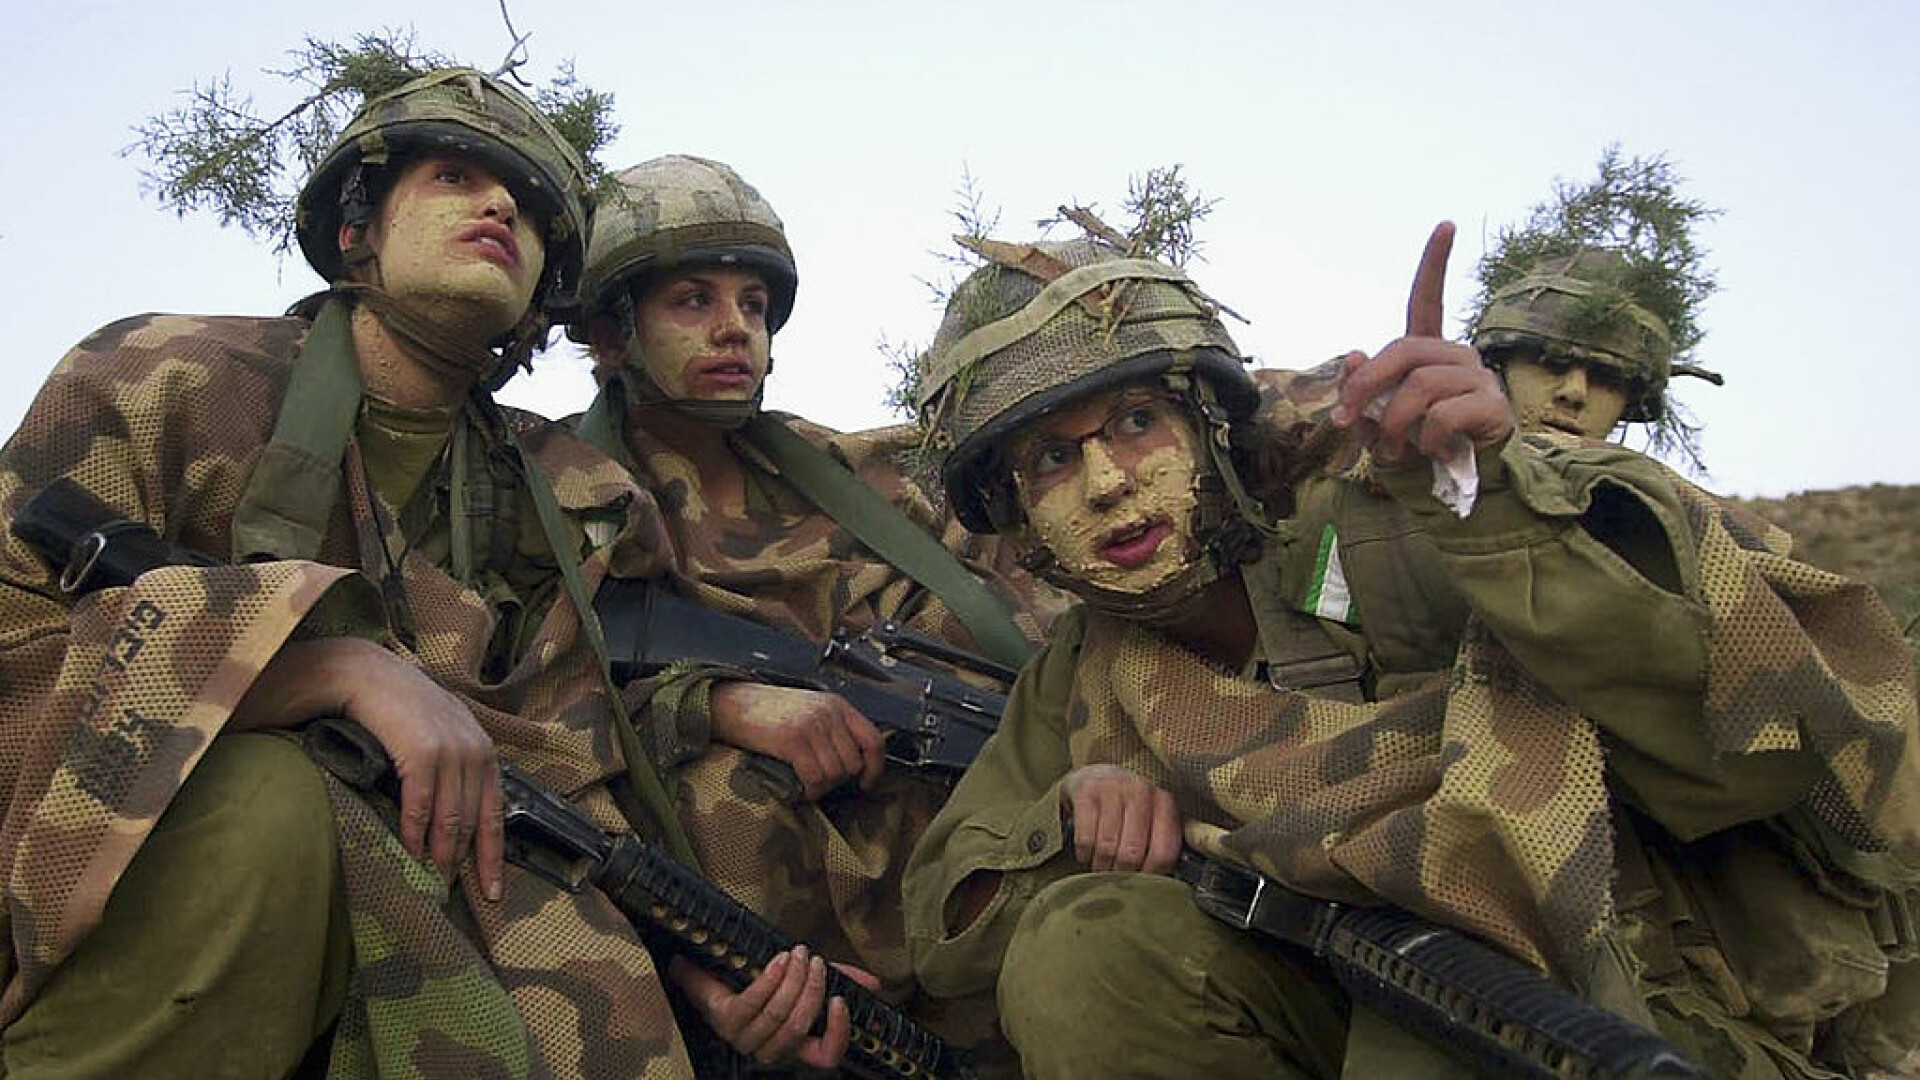 soldati israel, armata israel